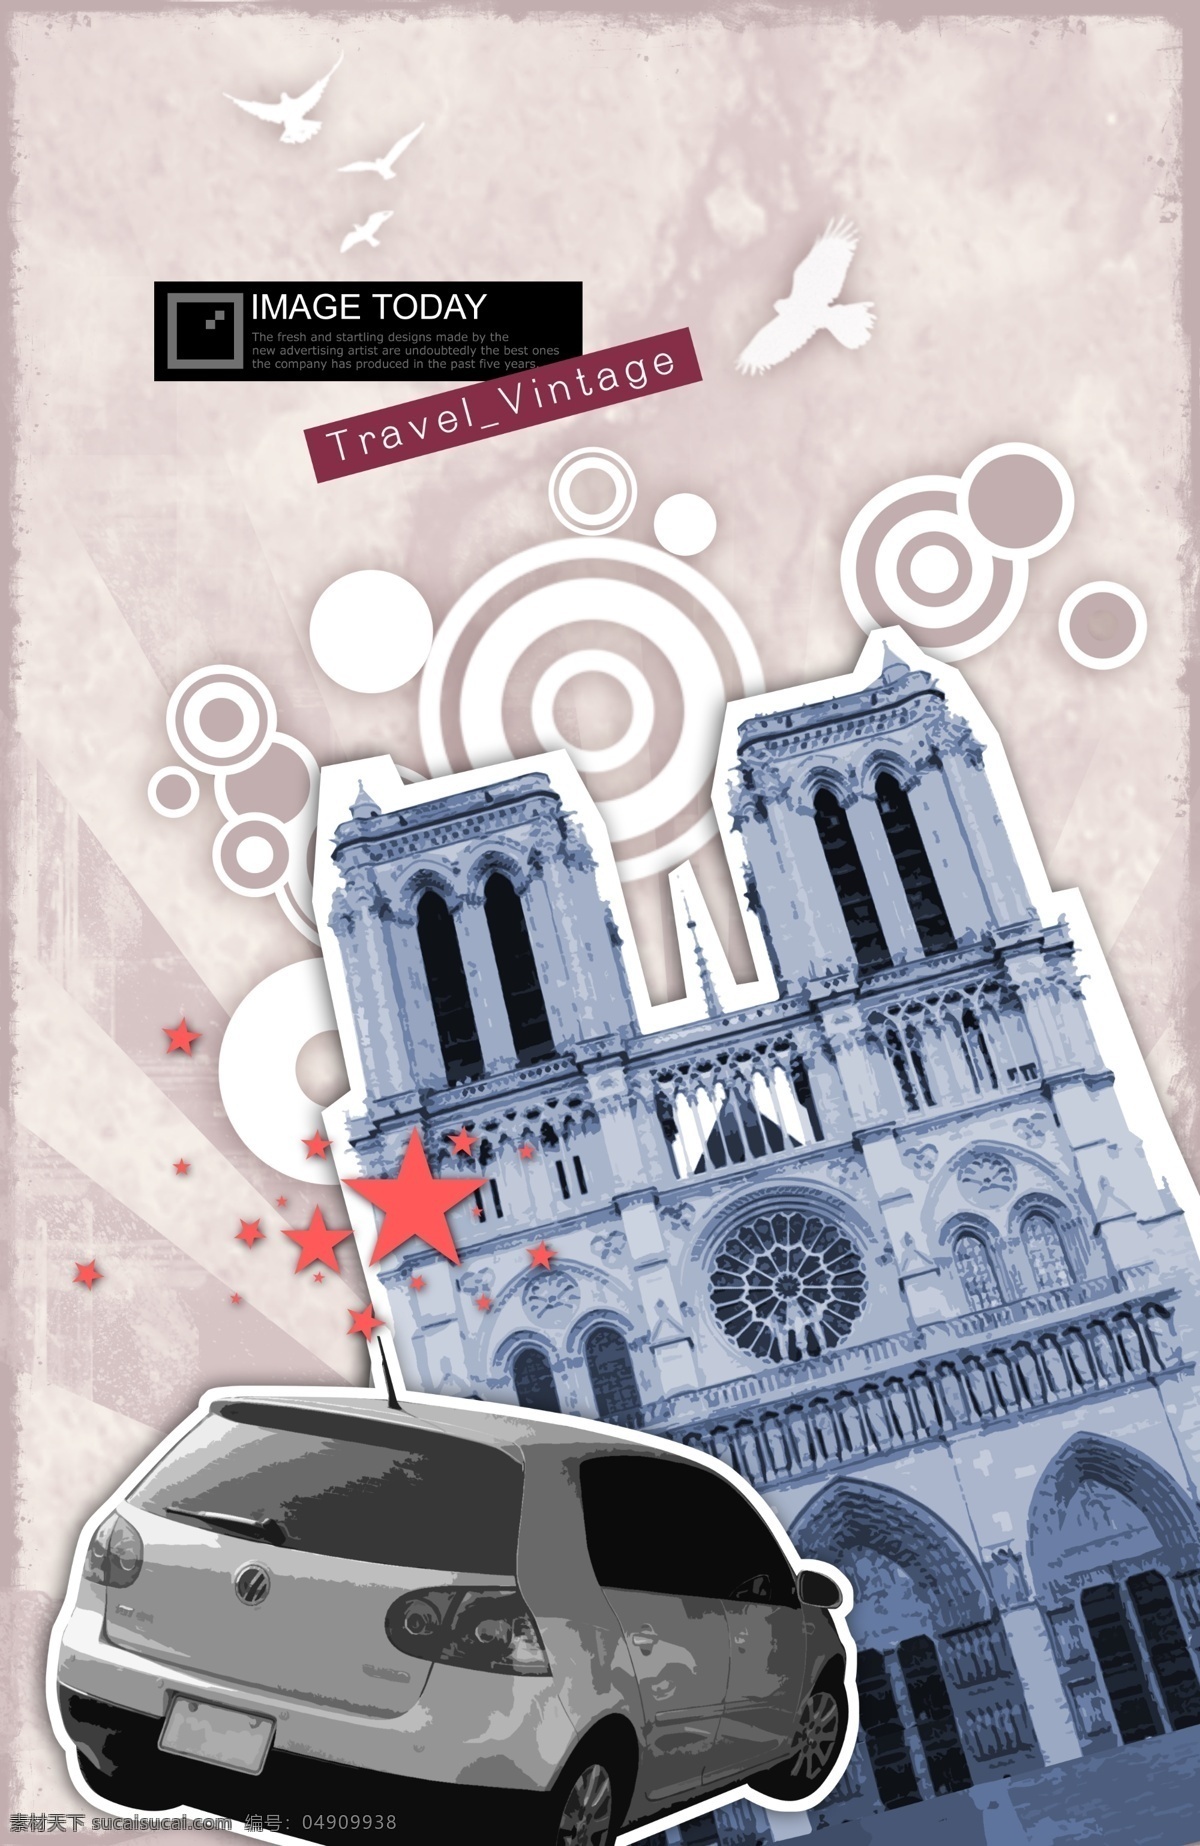 巴黎 自驾 旅行 时尚 时尚元素 旅游 小轿车 凯旋门 建筑雕塑 环境设计 psd素材